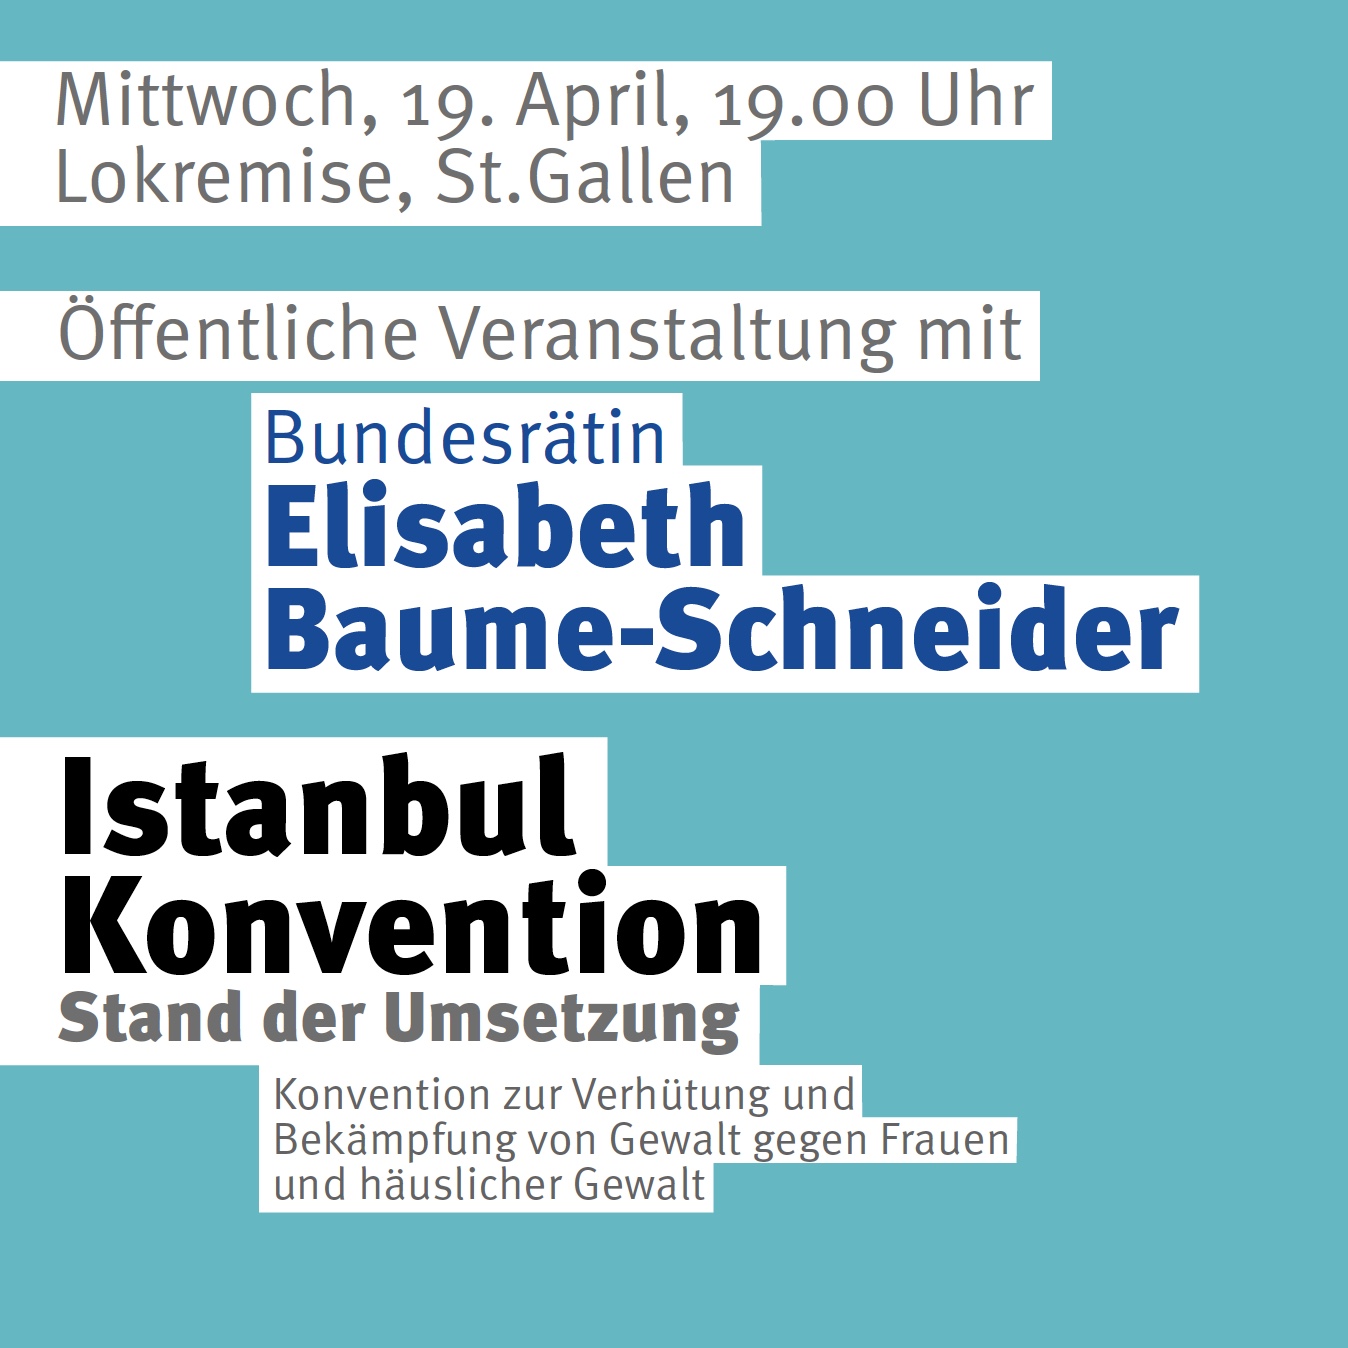 Bundesrätin Elisabeth Baume-Schneider in St. Gallen